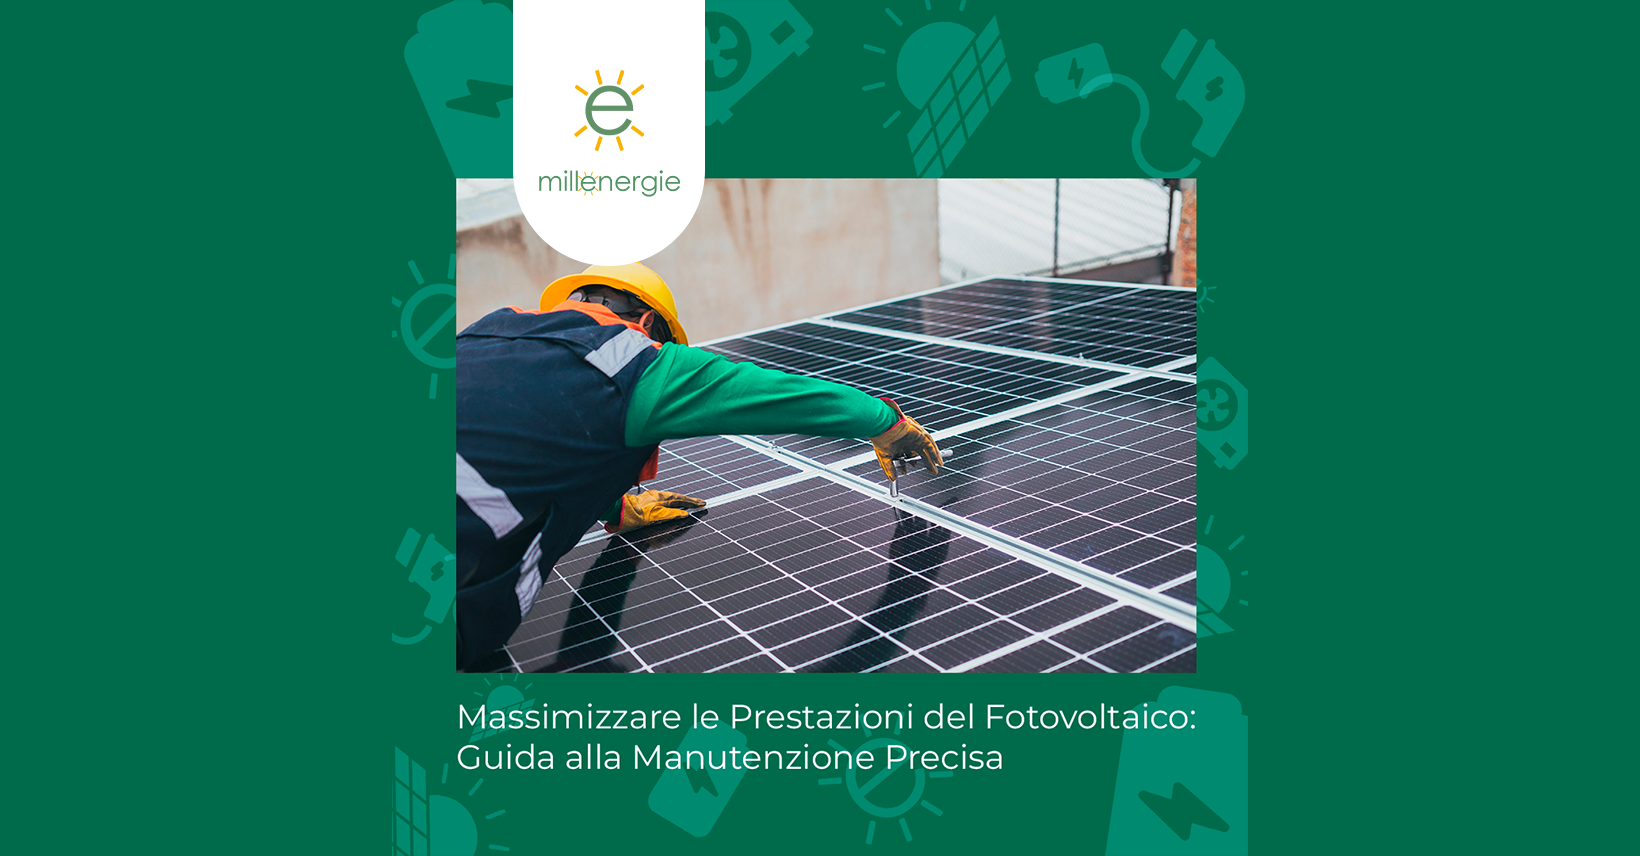 Massimizzare le Prestazioni del Fotovoltaico: Guida alla Manutenzione Precisa